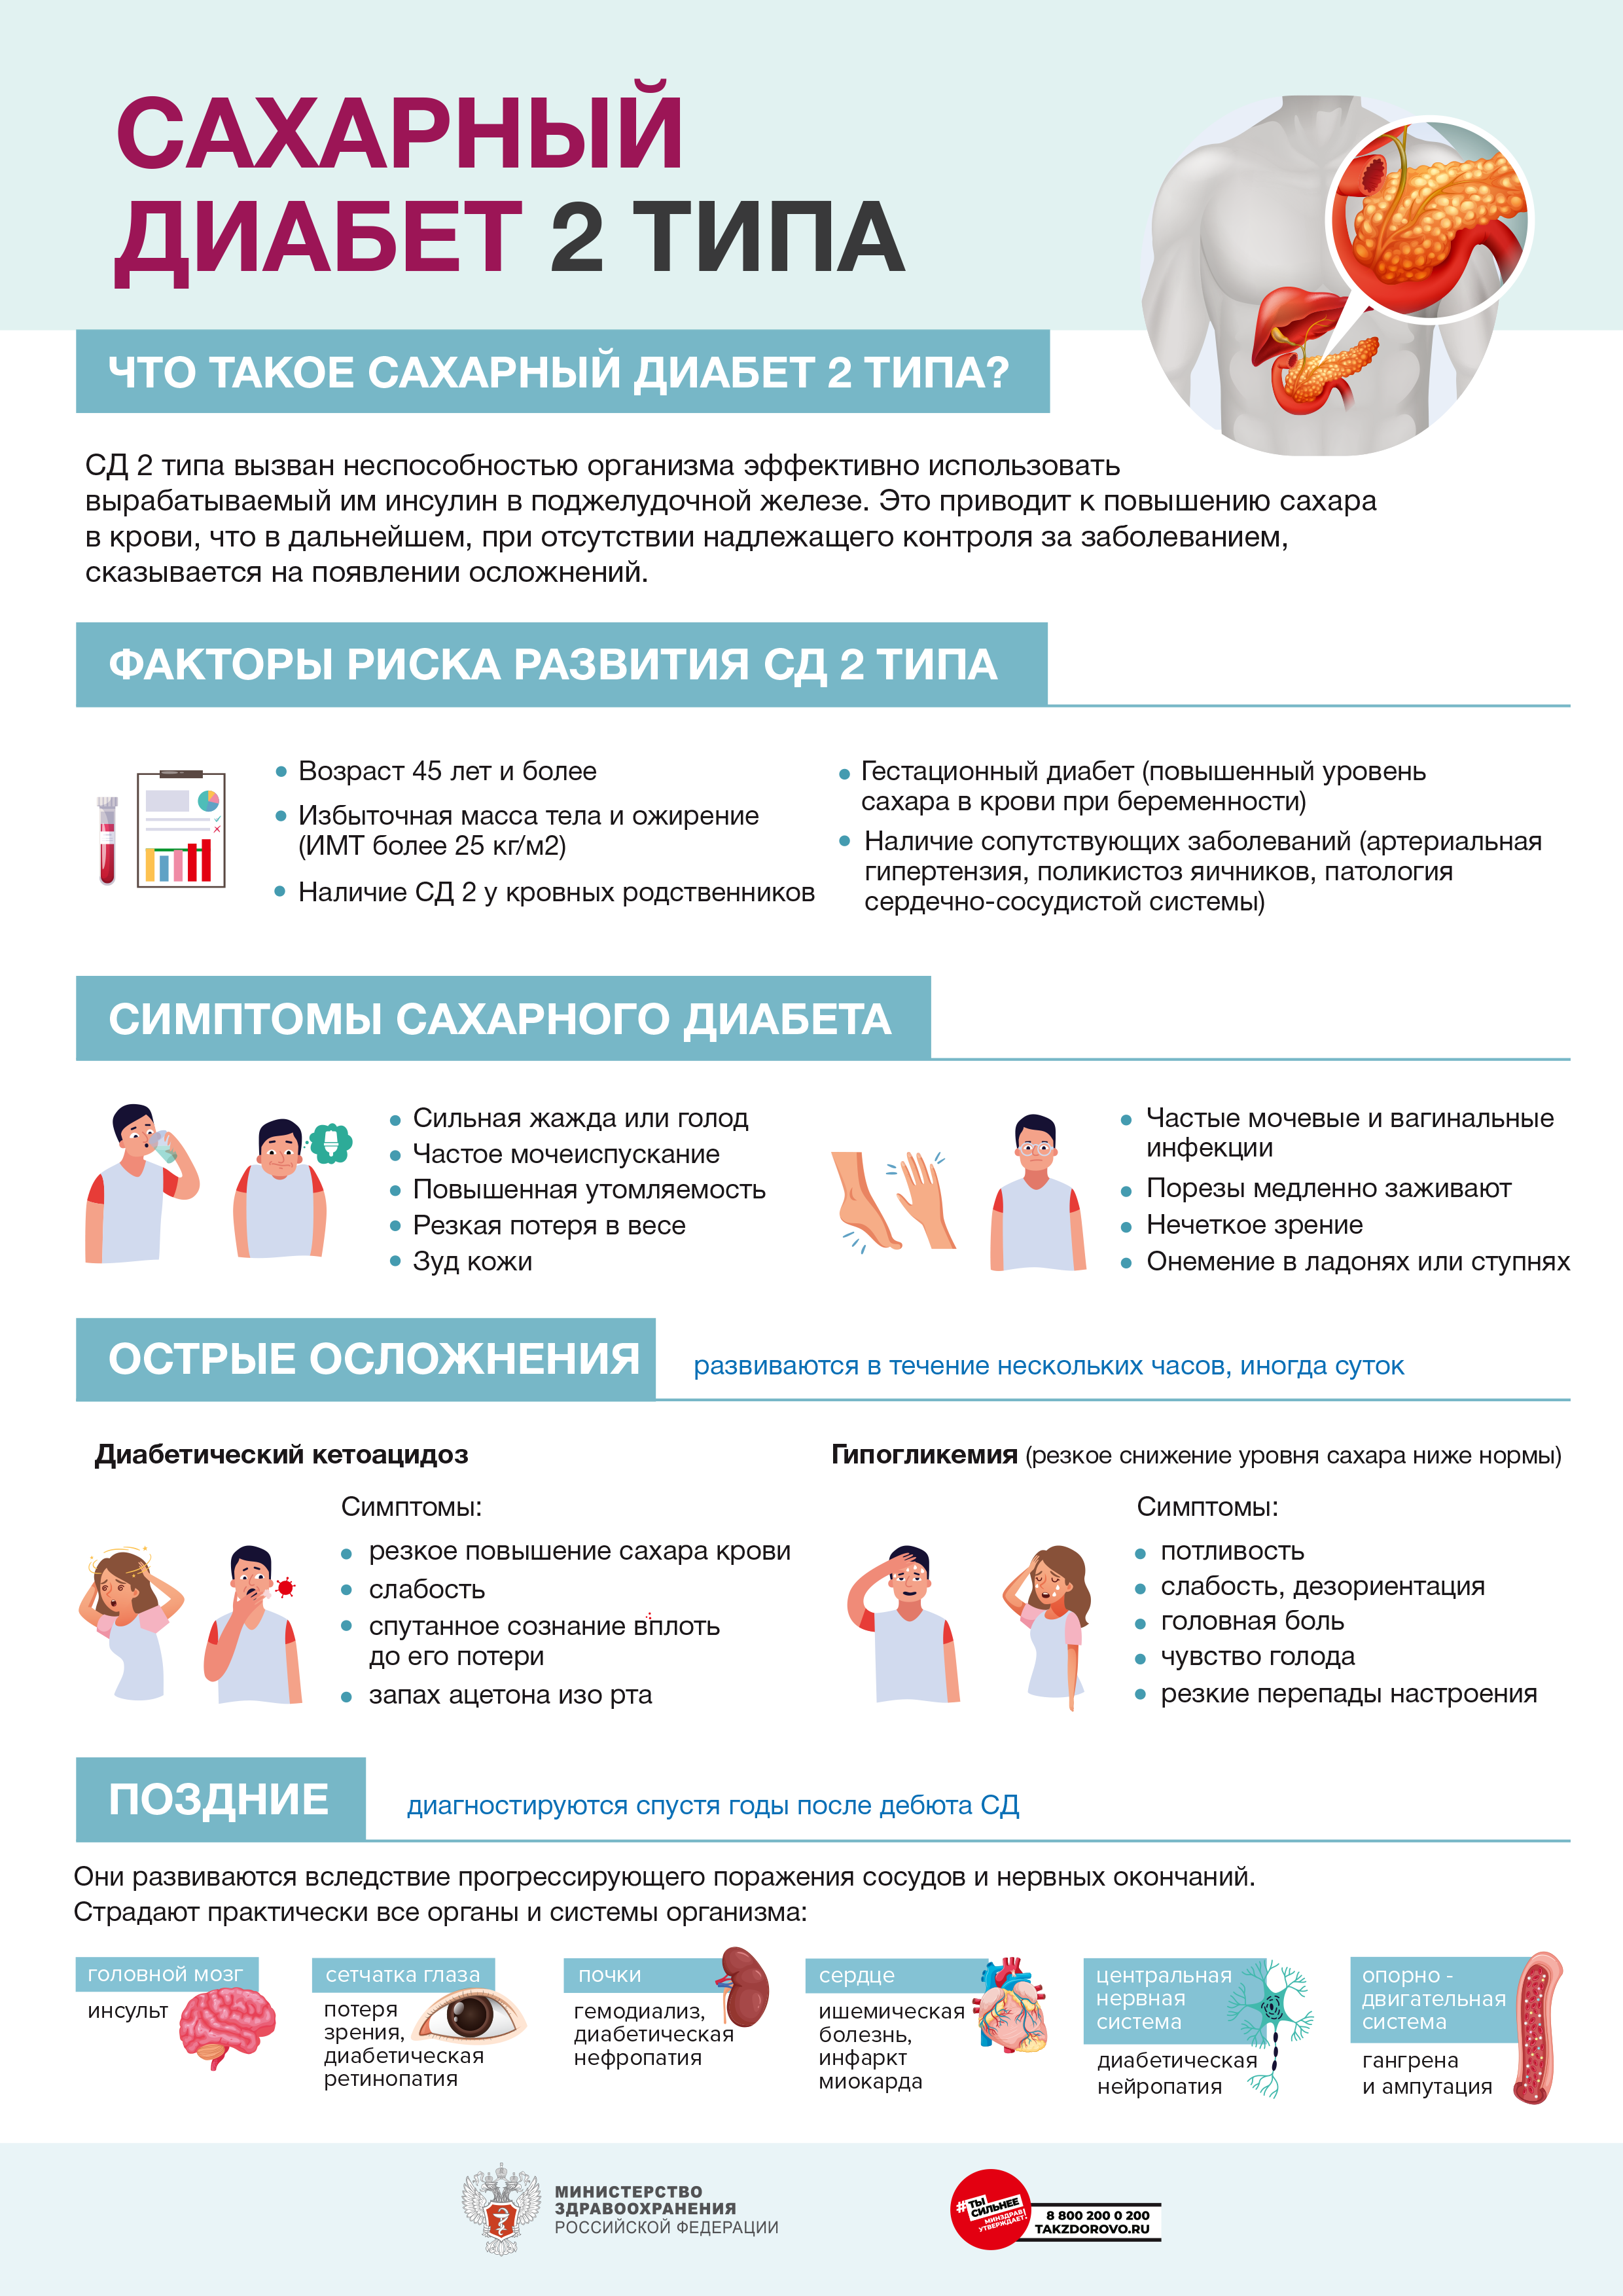 Сахарный диабет: цена лечения сахарного диабета 1 и 2 типа в Киеве в клинике Оксфорд Медикал